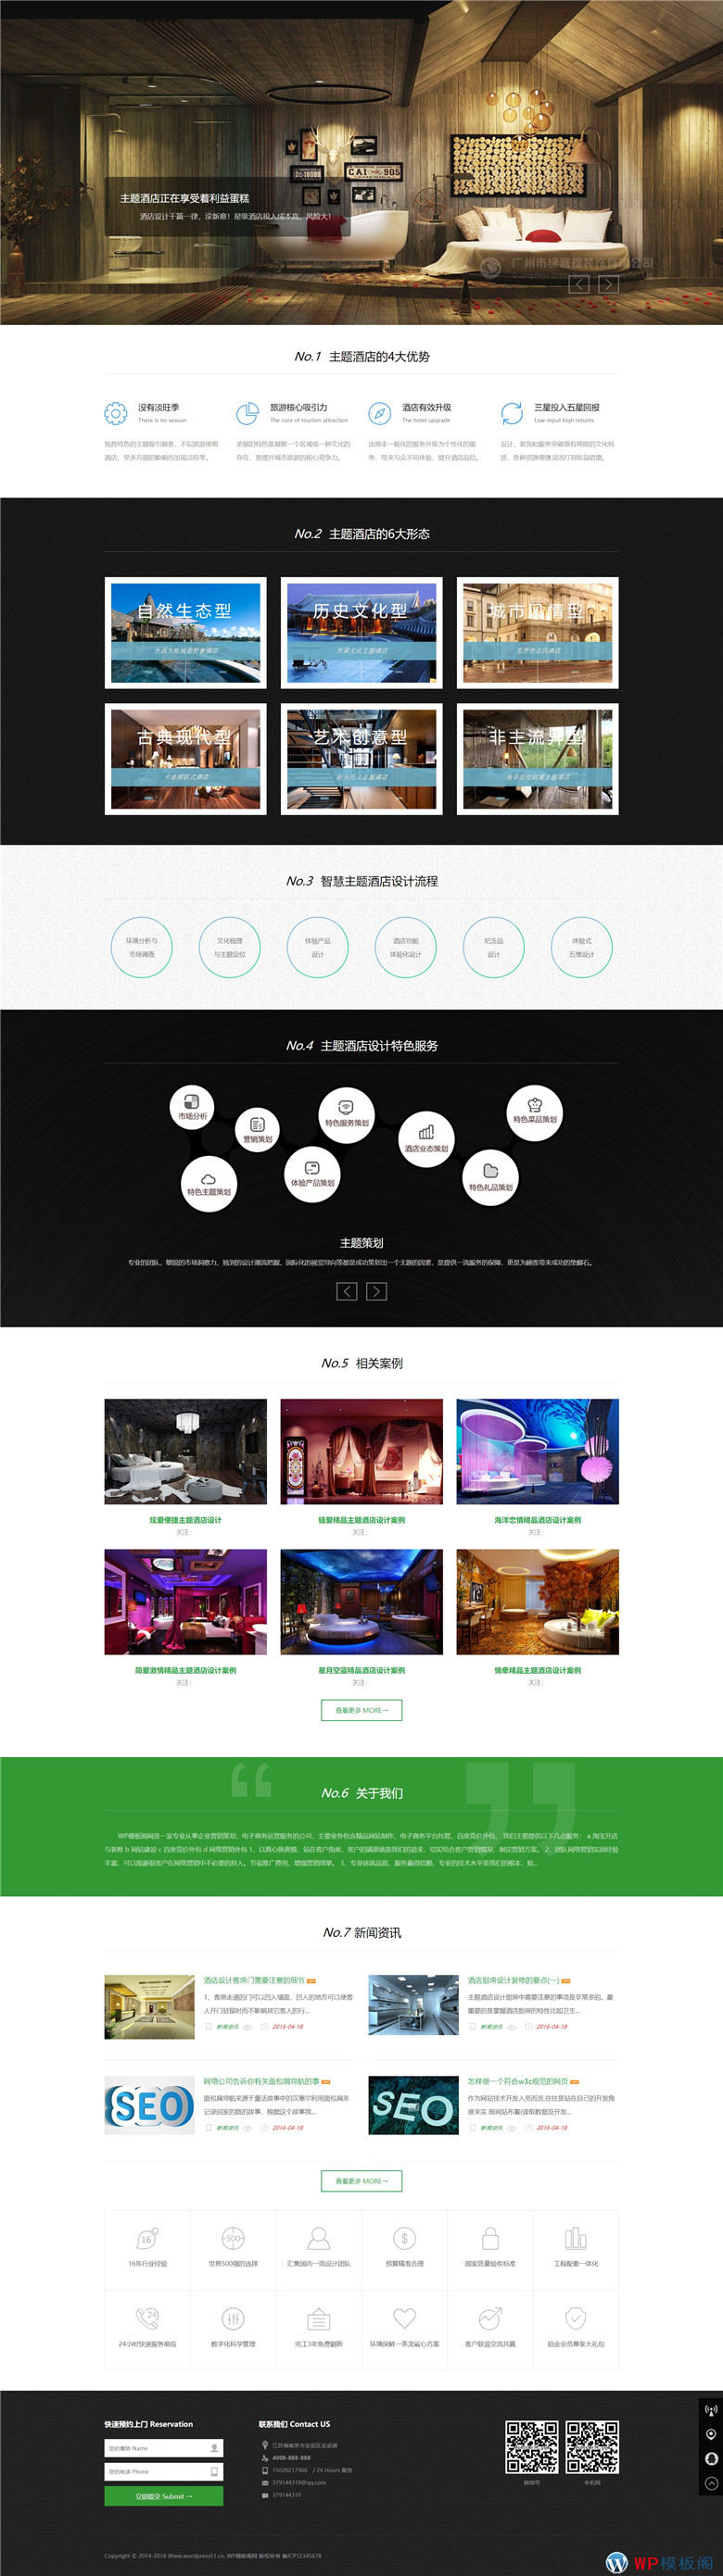 响应式酒店装修设计室内装饰公司网站Wordpress模板模演示图